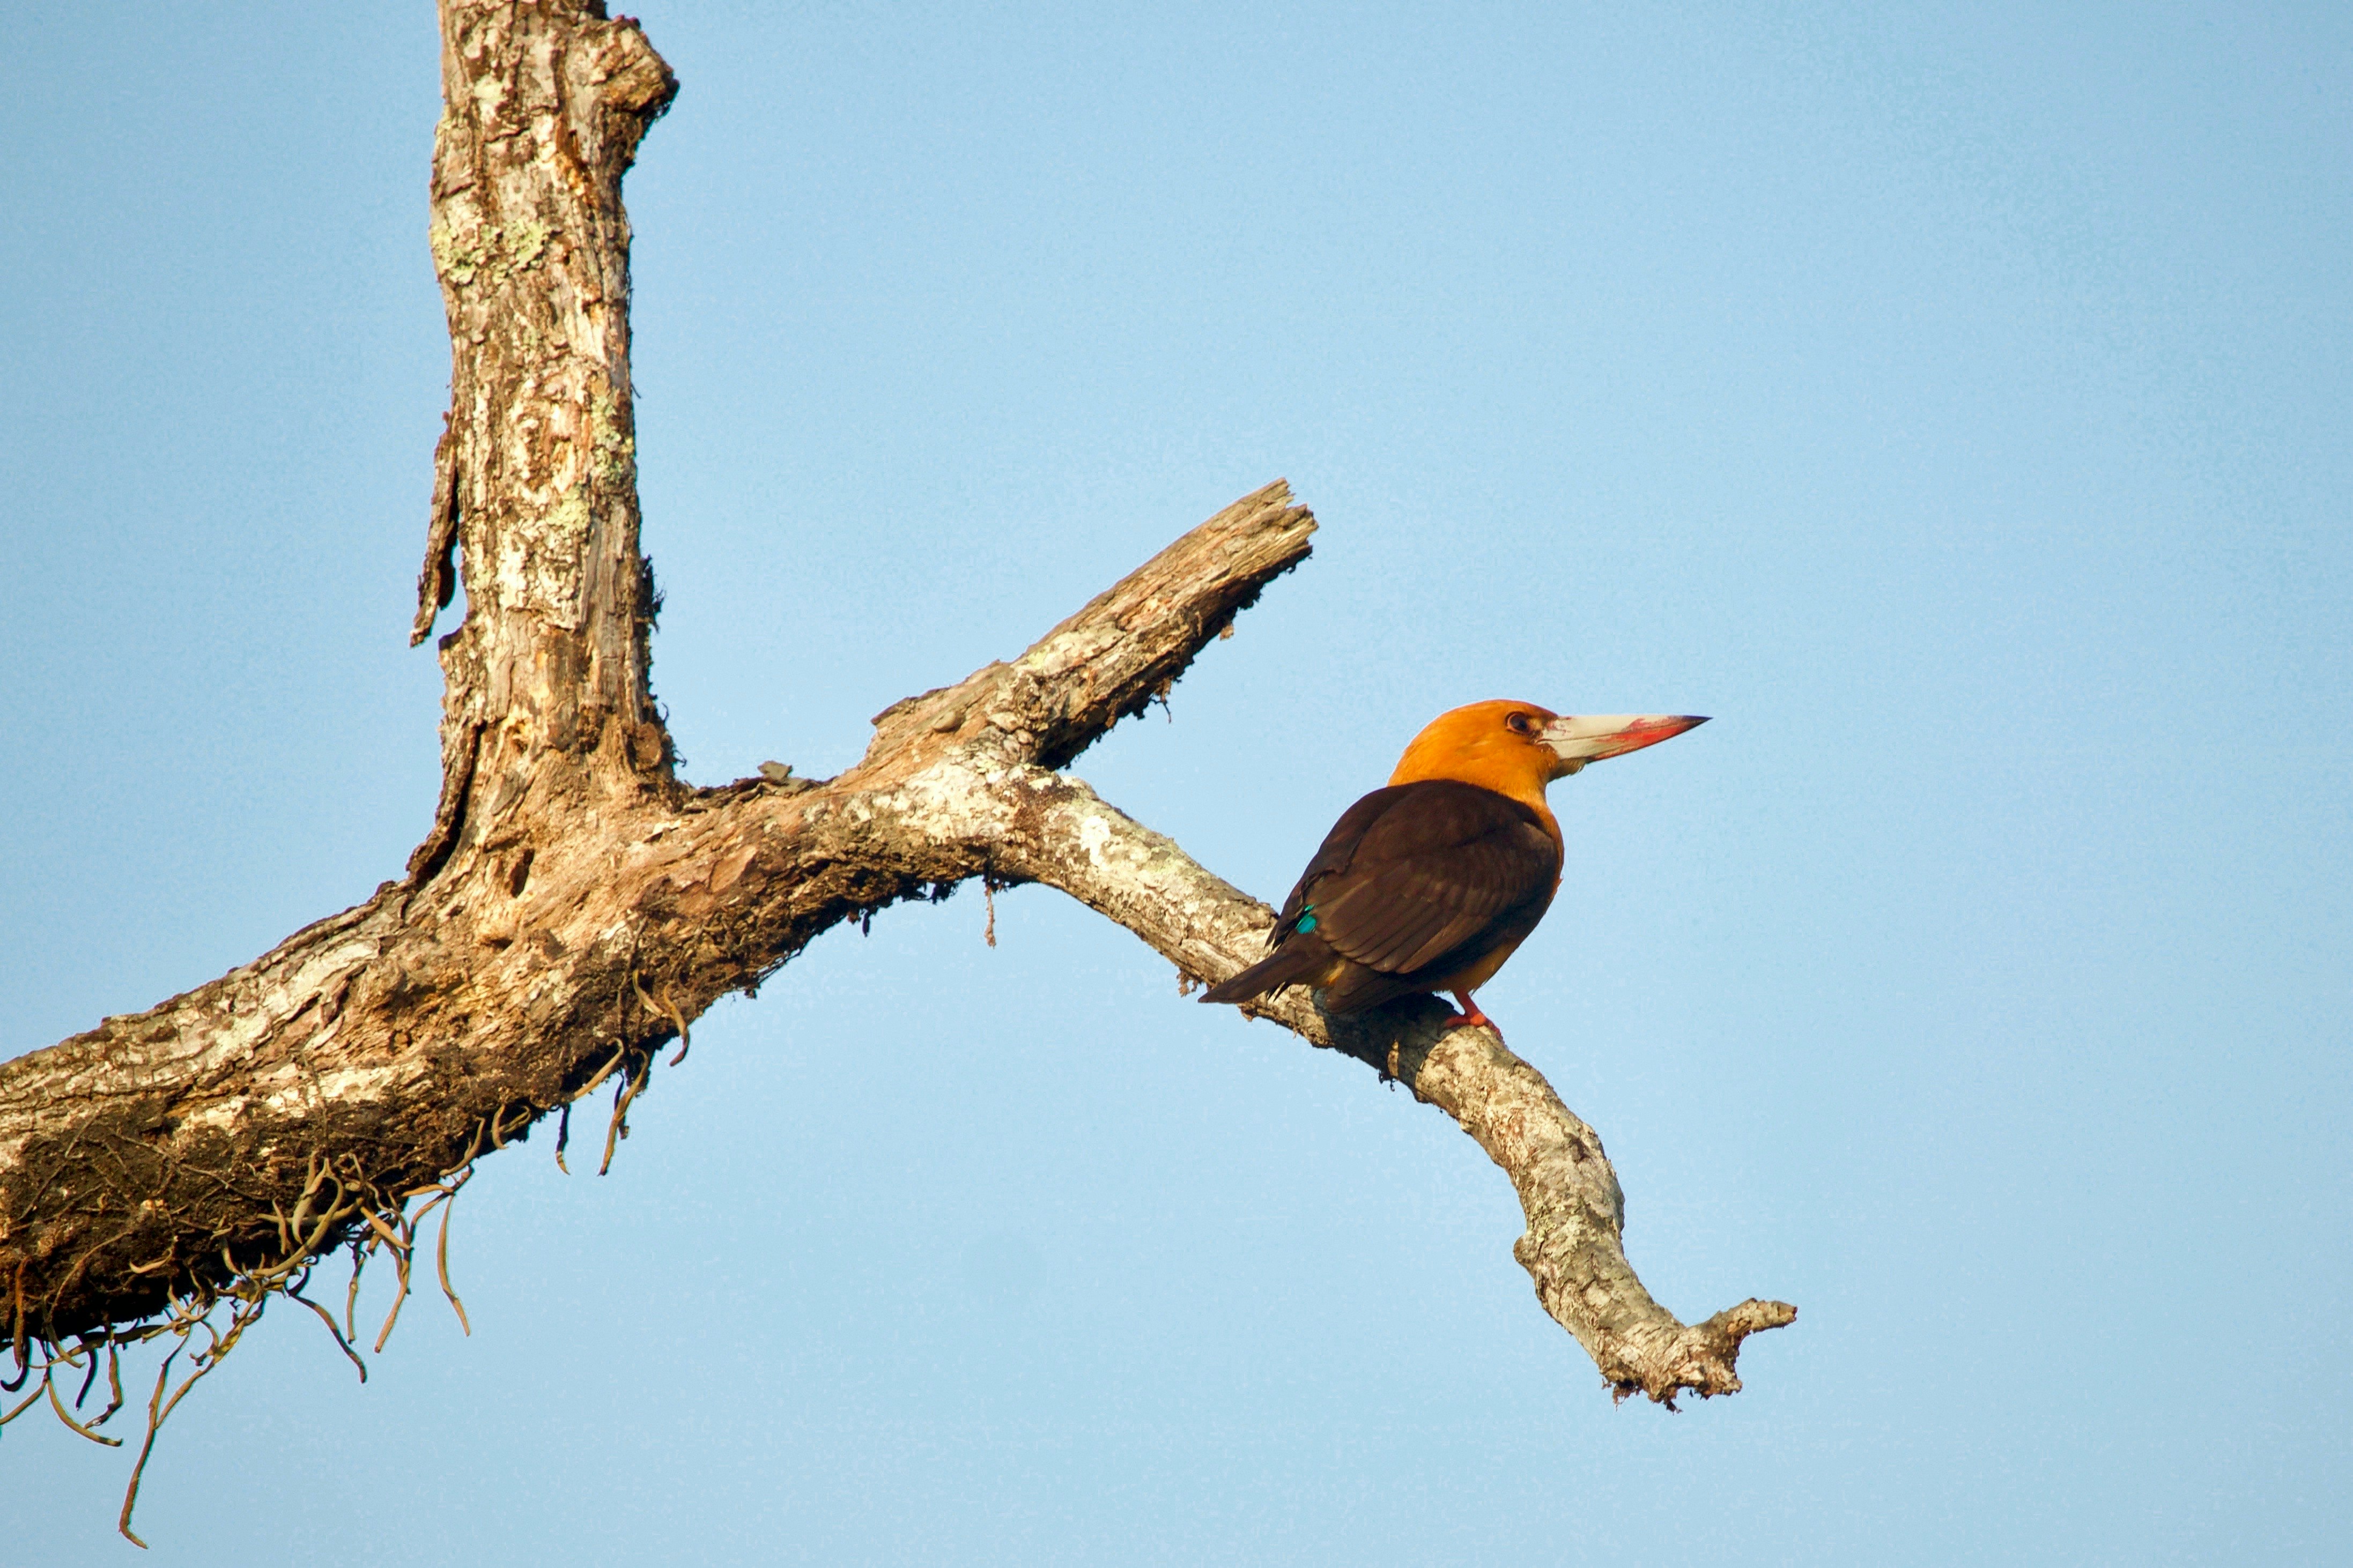 orange long-beaked bird on tree